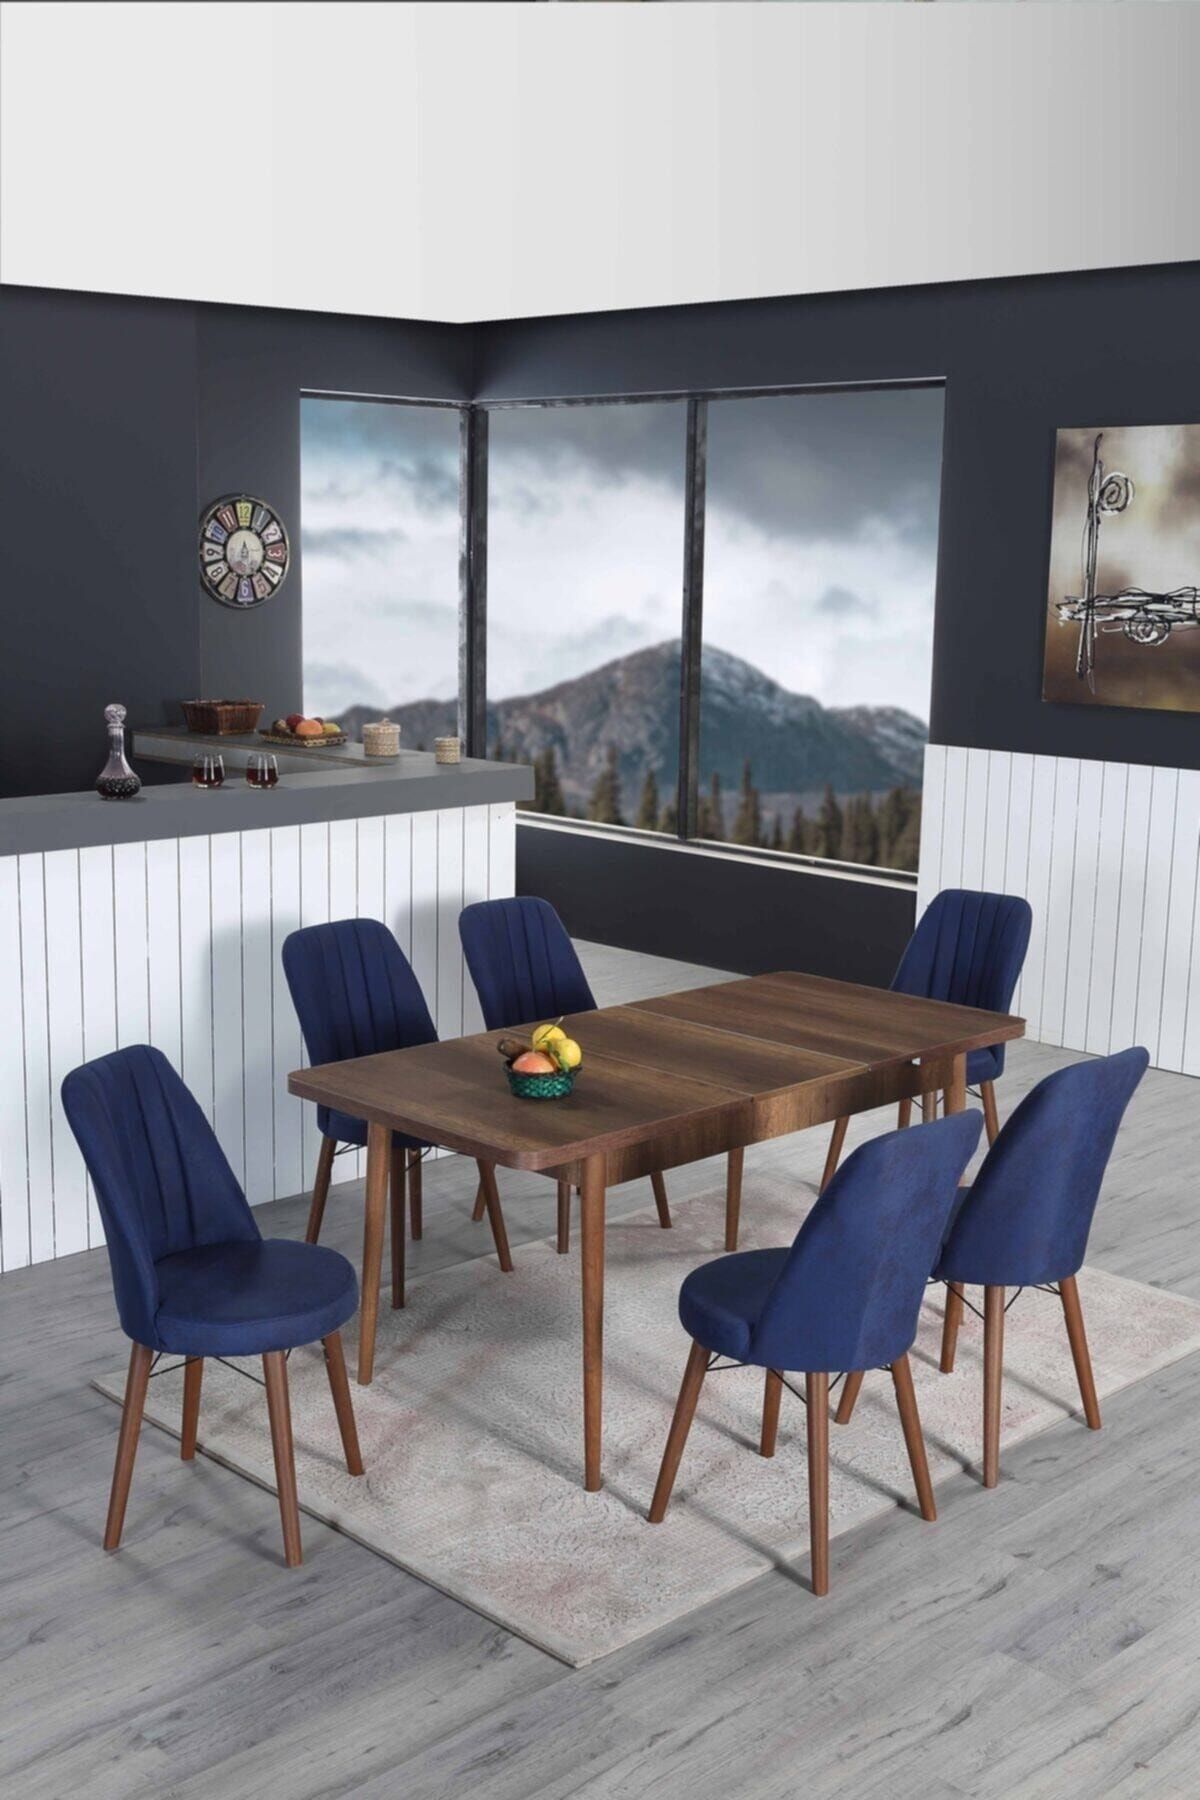 Lion 6 Kişilik Açılır Masa Sandalye Takımı Mutfak Masası Takımı Salon Masası Yemek Masası Masa Takımı